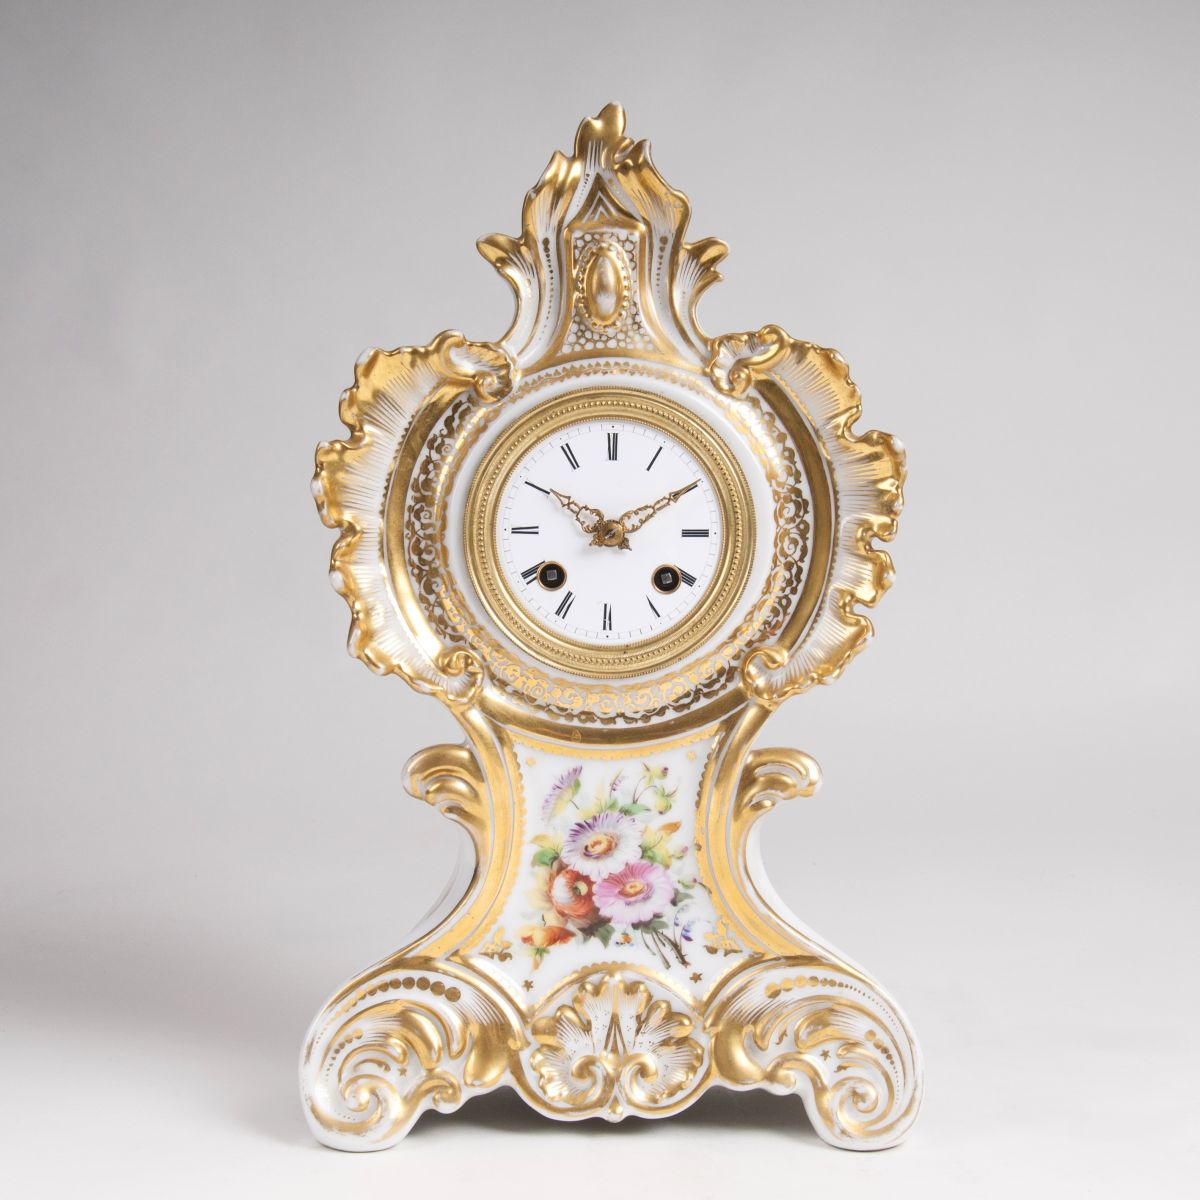 Porzellan-Tischuhr mit Pariser Uhrwerk - Bild 1